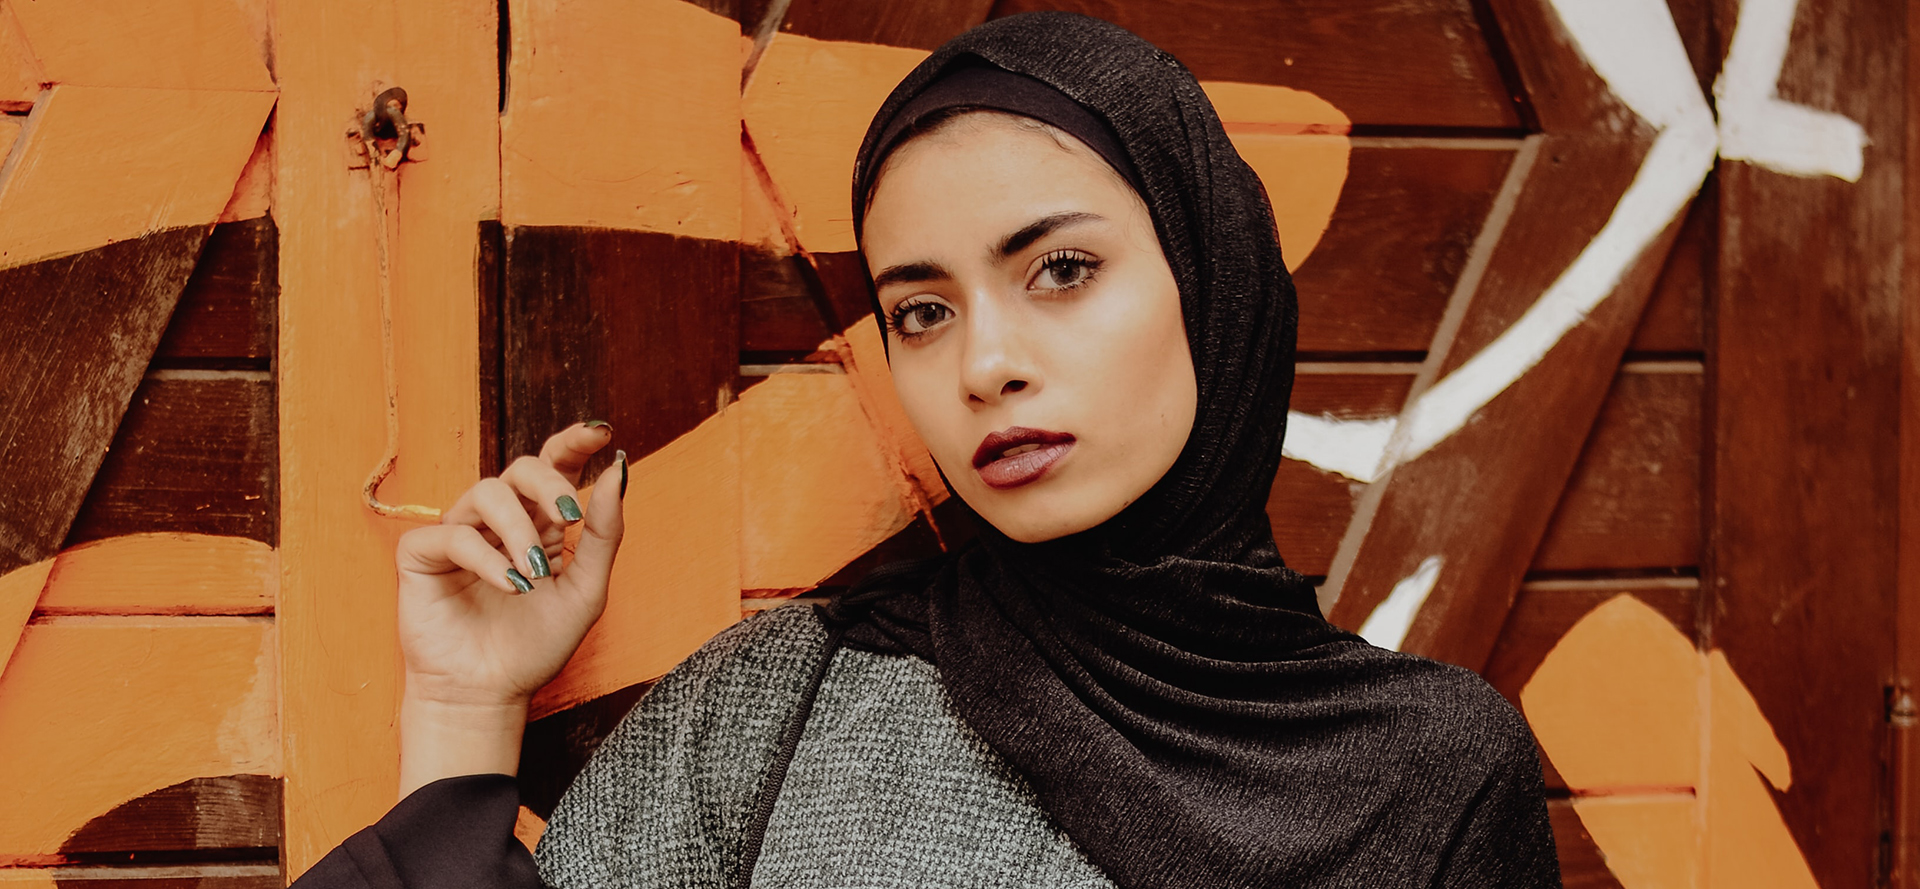 Mulher árabe em um lenço de cabeça preto.